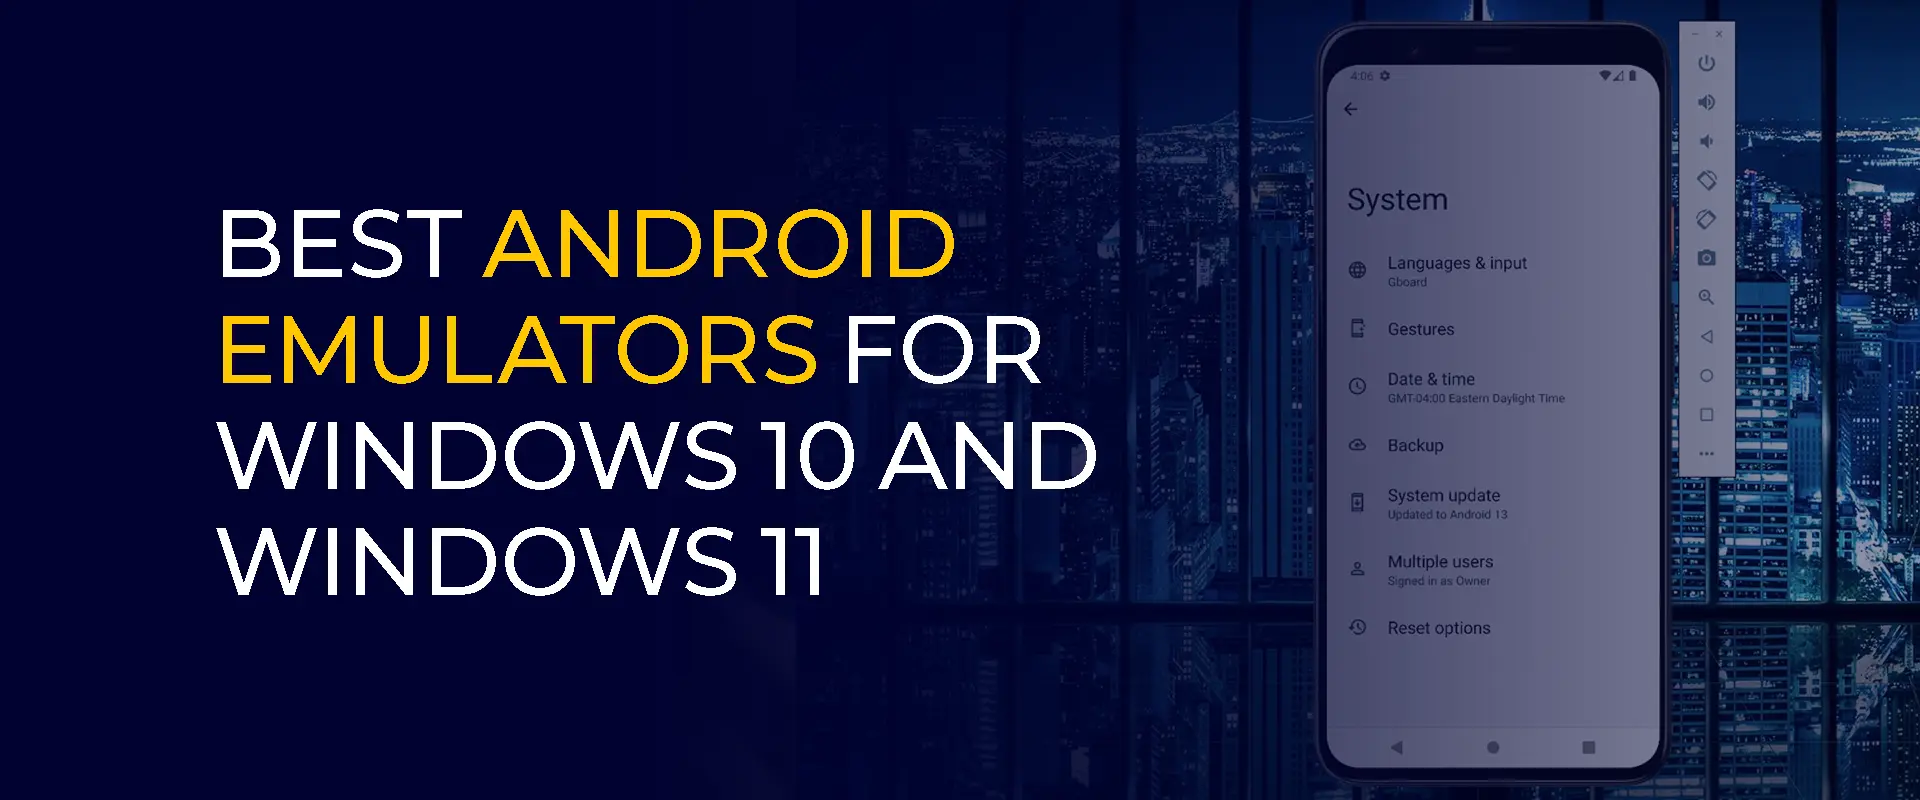 Los mejores emuladores de Android para Windows 10 y Windows 11